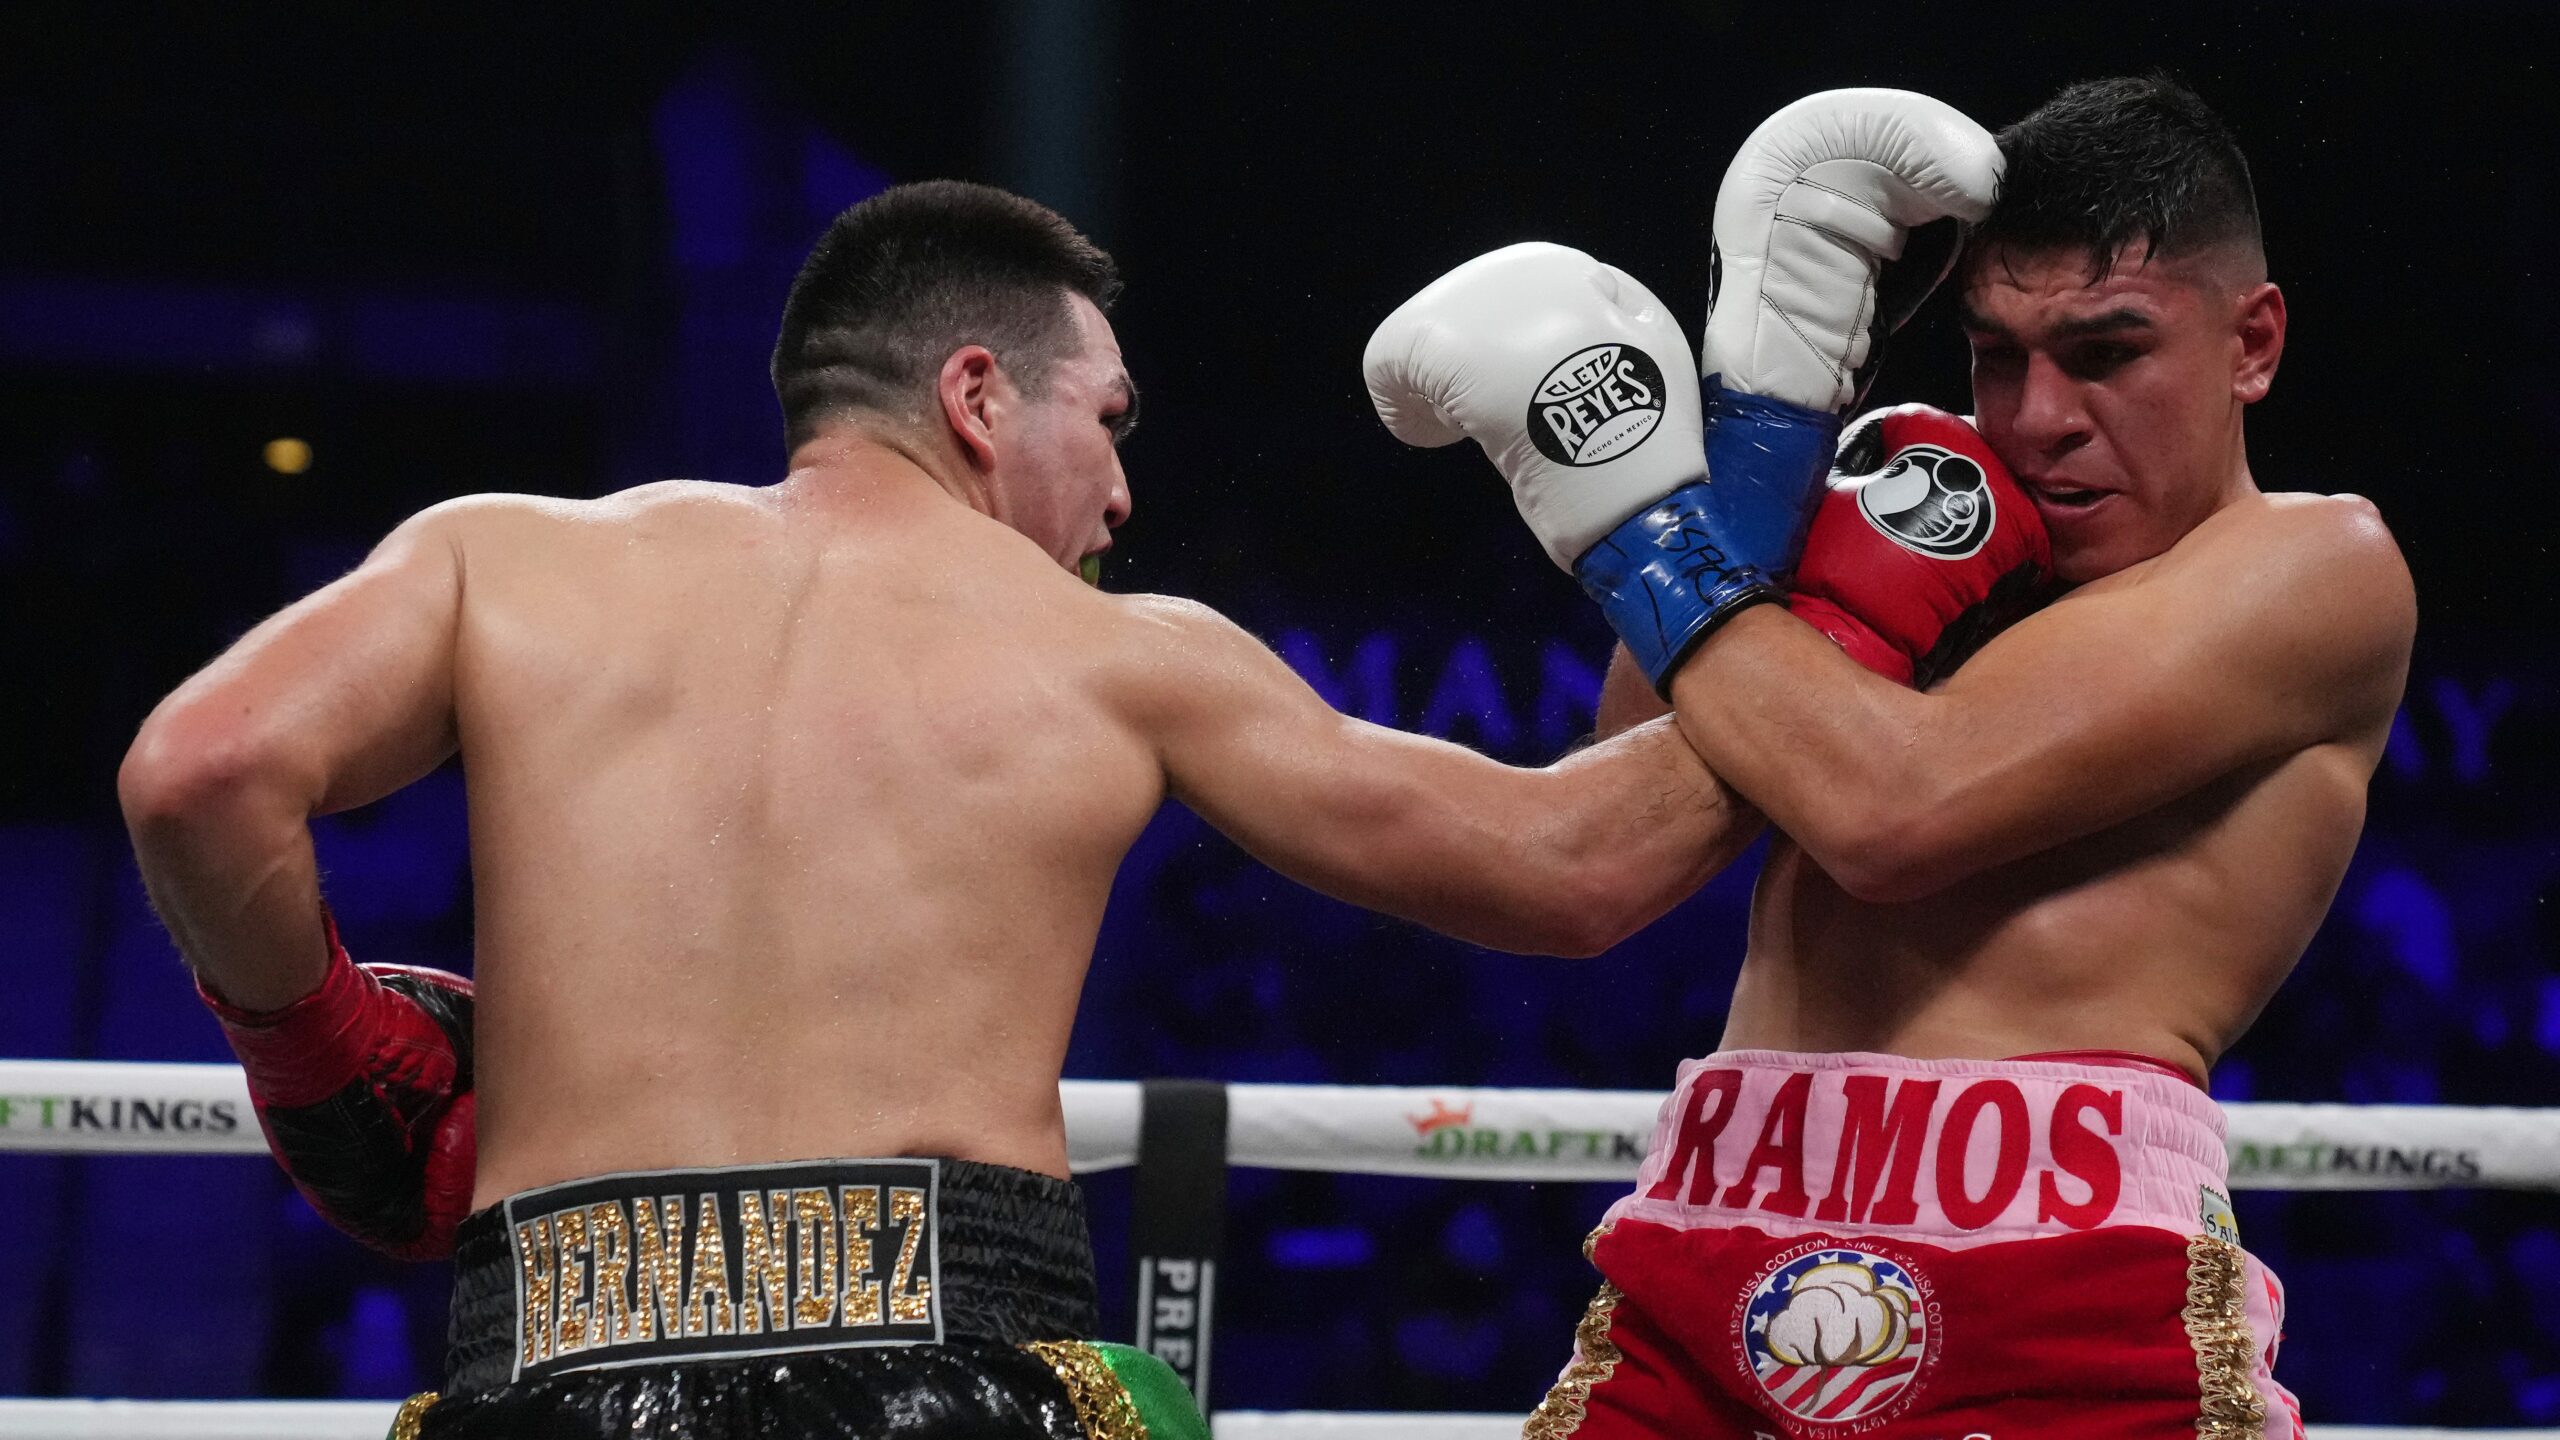 Jesus Ramos knocks out Vladimir Hernandez in Round 6